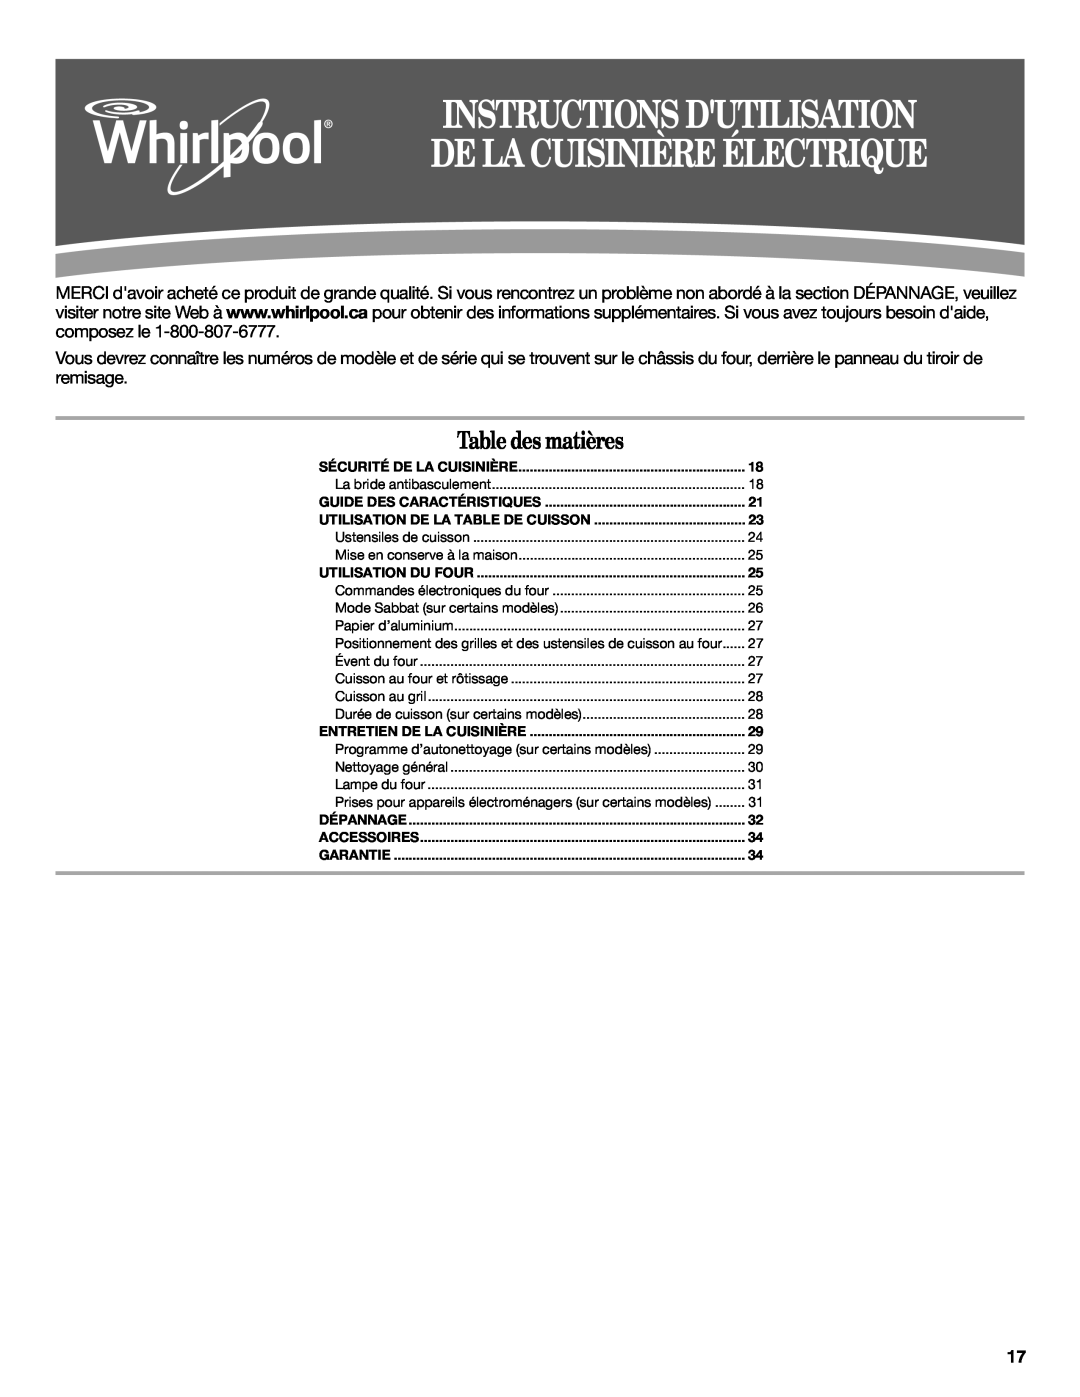 Whirlpool W10394385A Instructions Dutilisation De La Cuisinière Électrique, Table des matières, Guide Des Caractéristiques 